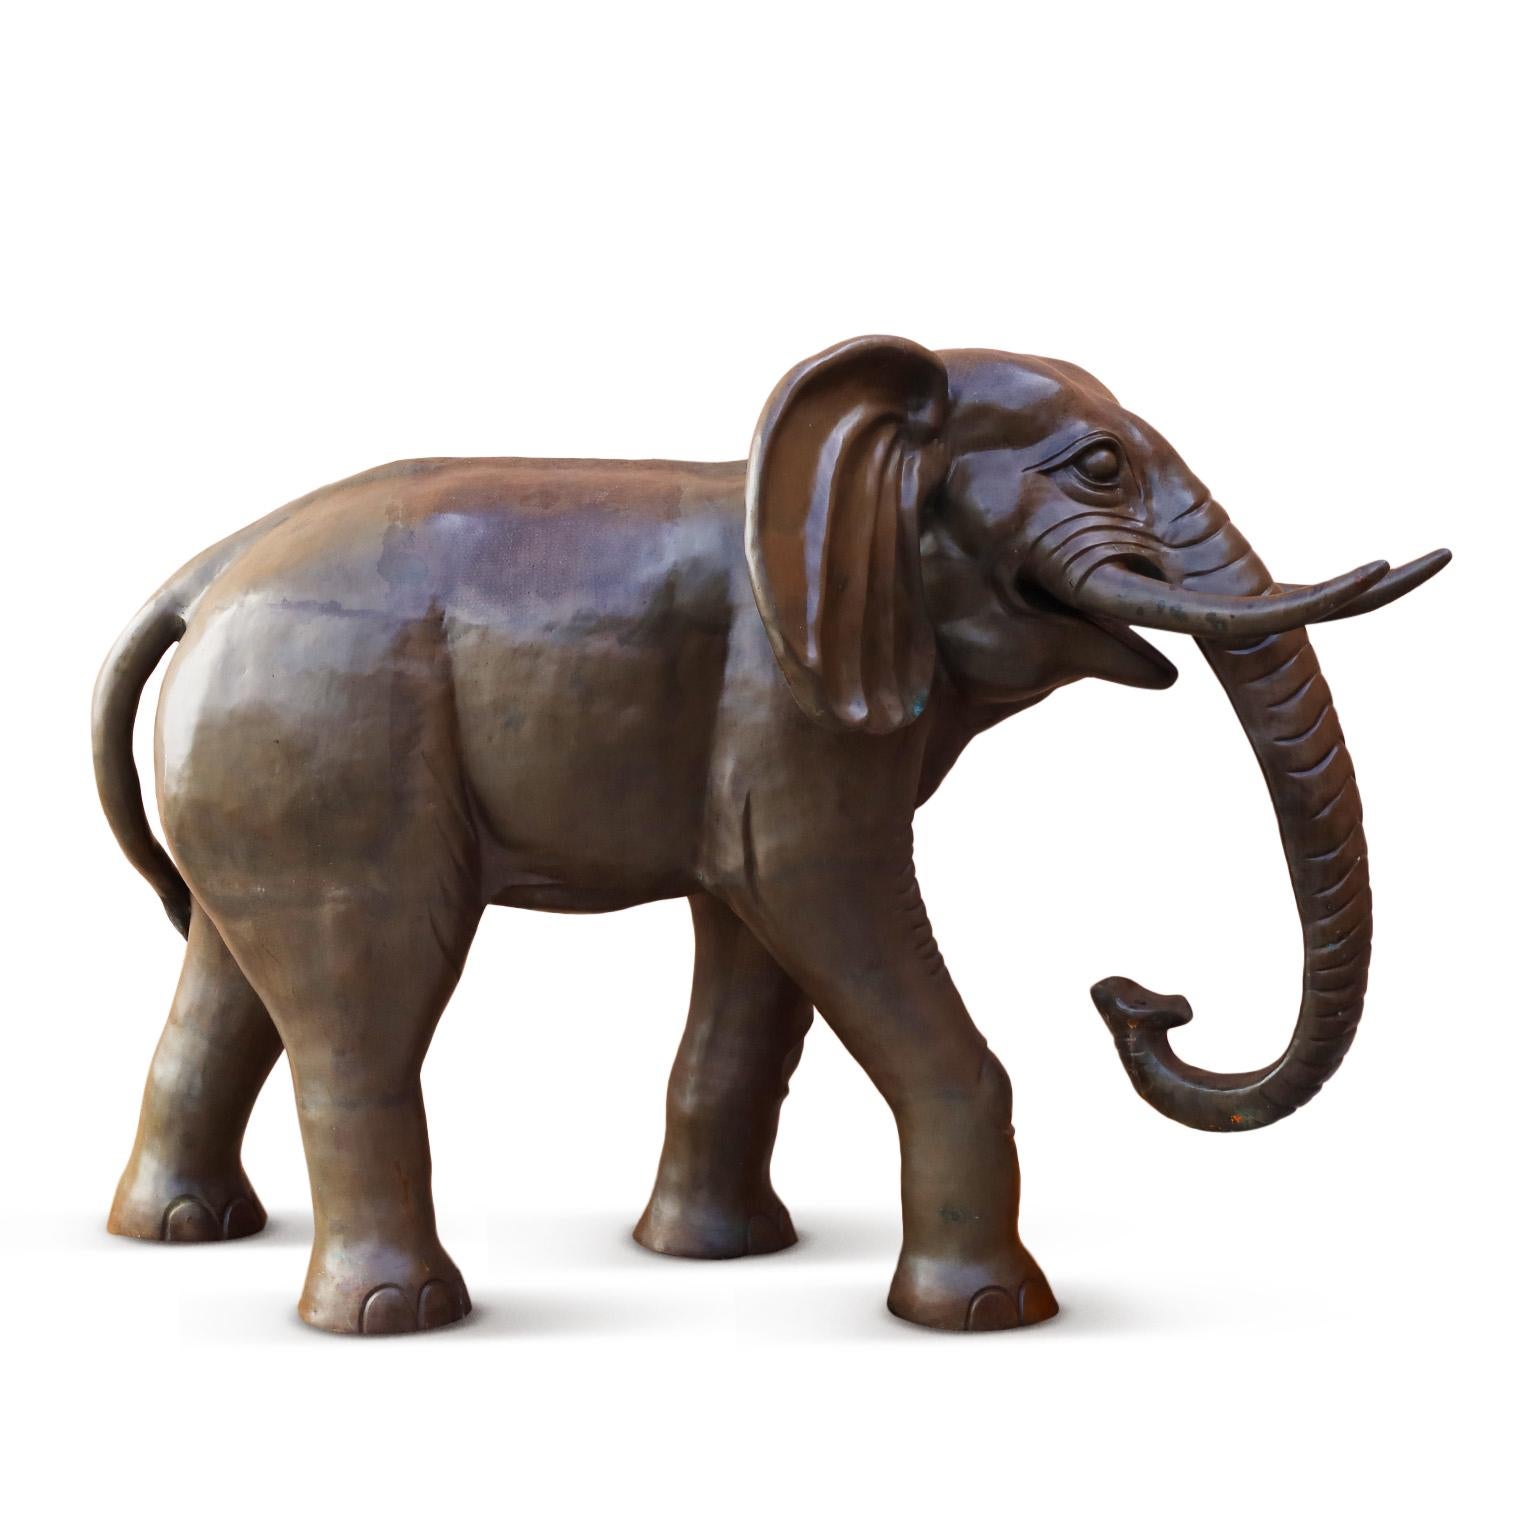 Rare et remarquable sculpture d'éléphant réalisée de manière experte en bronze avec une patine luxuriante, une attention ambitieuse aux détails et une échelle dramatique proche de la taille réelle.